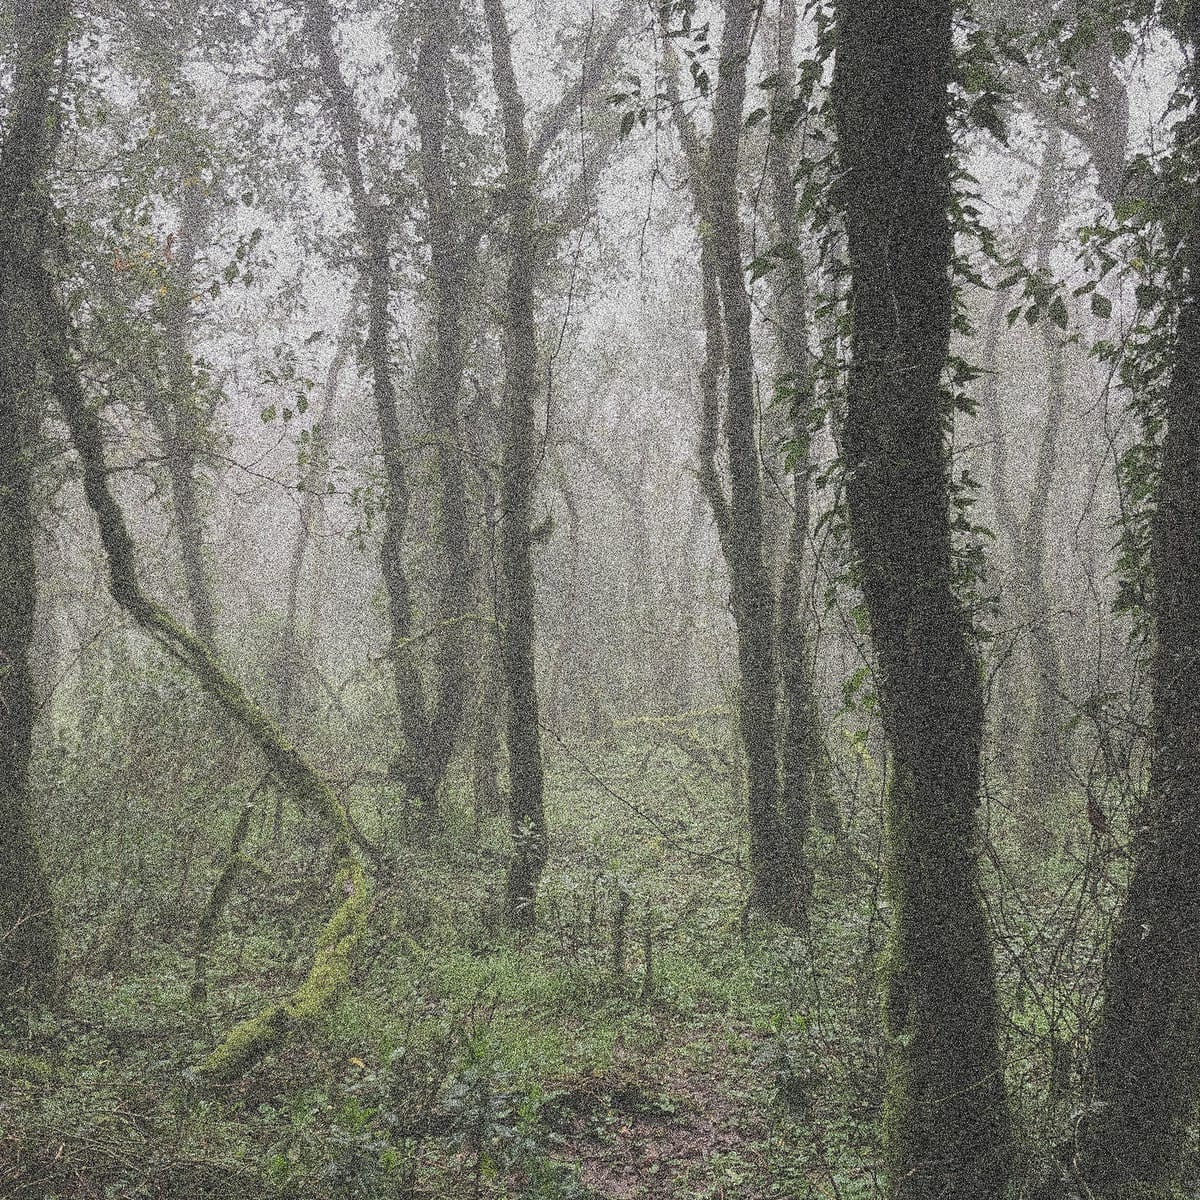 Release Cover: ORBE - El Bosque de la Niebla. SEMANTICA 157 on Electrobuzz